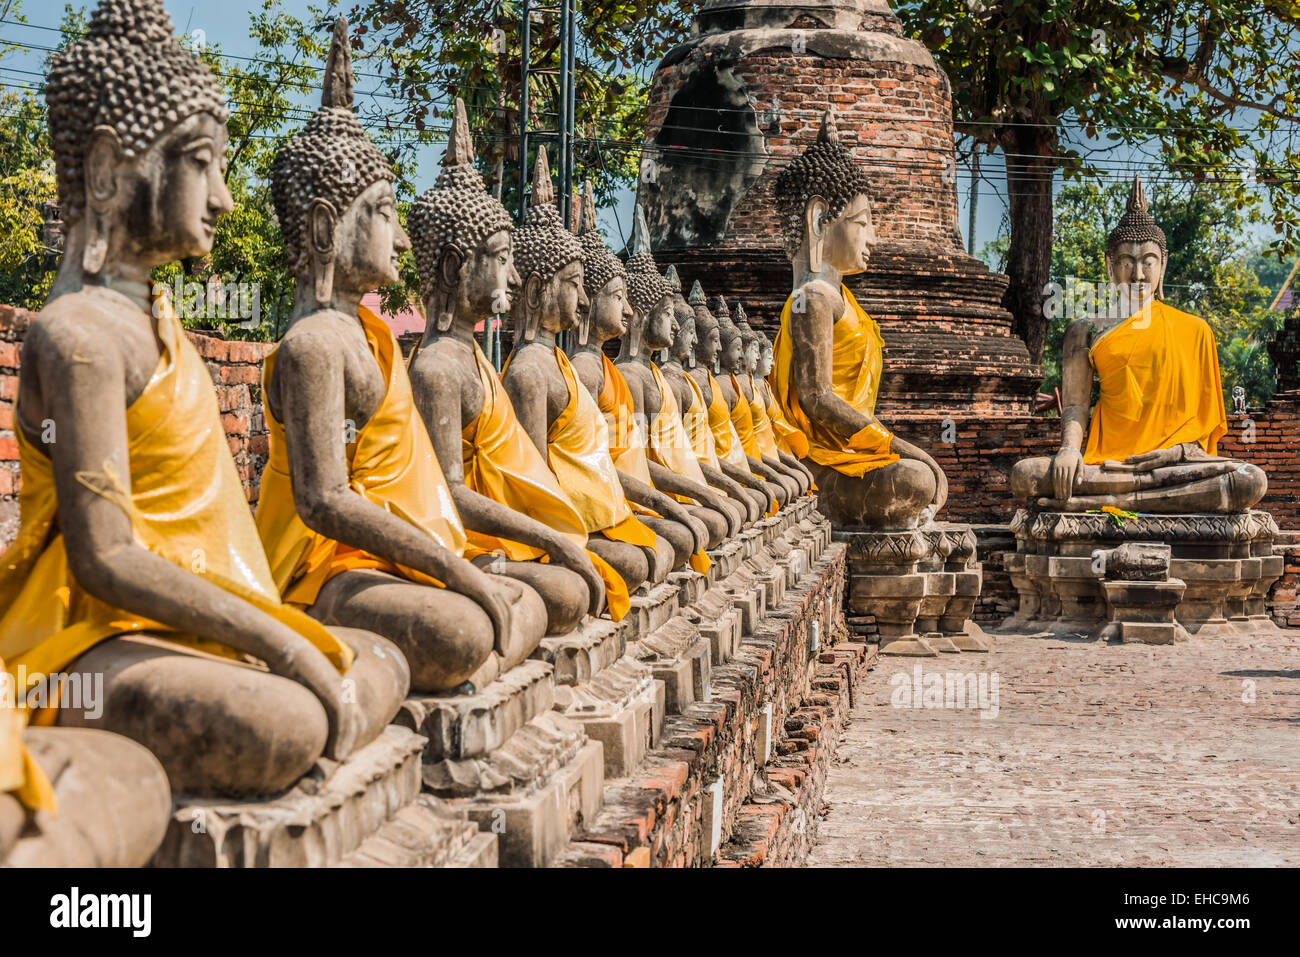 Alignés les statues de Bouddha du Wat Yai Chai Mongkhon Ayutthaya Bangkok Thaïlande Banque D'Images